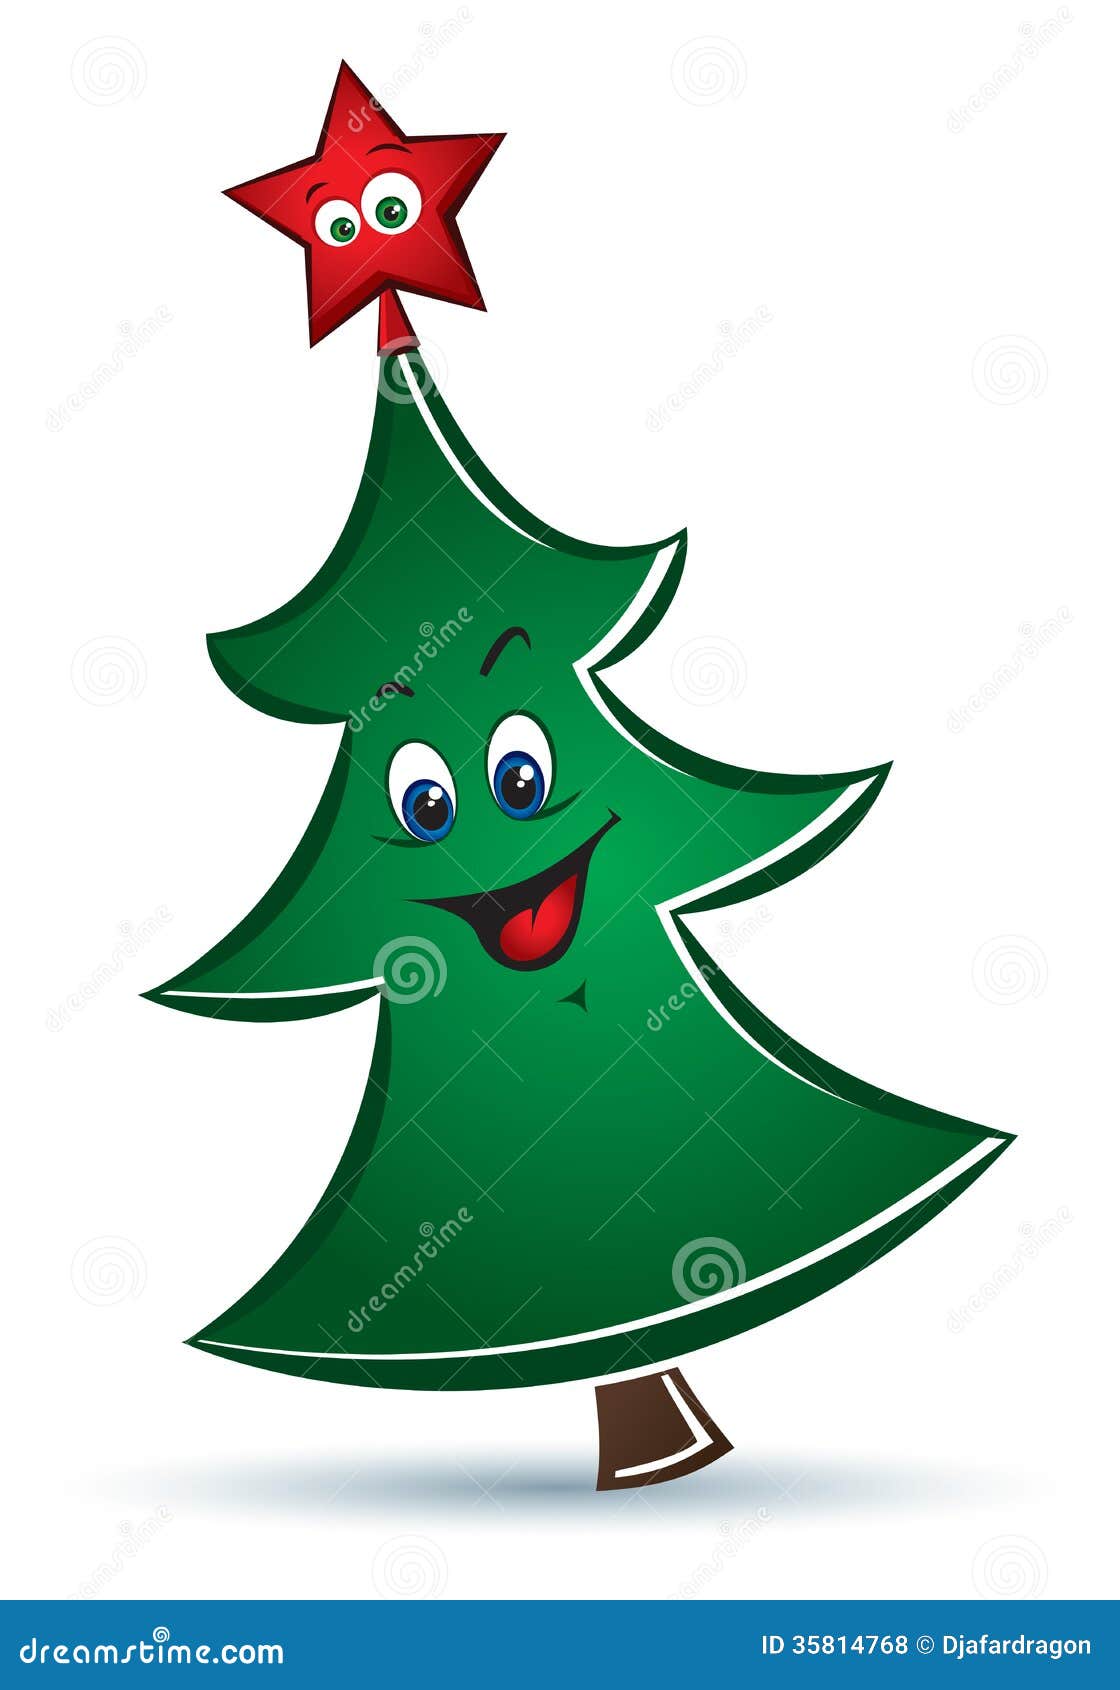 Cartoon Funny Vector Christmas Tree Royalty Free Stock Photos - Image ...